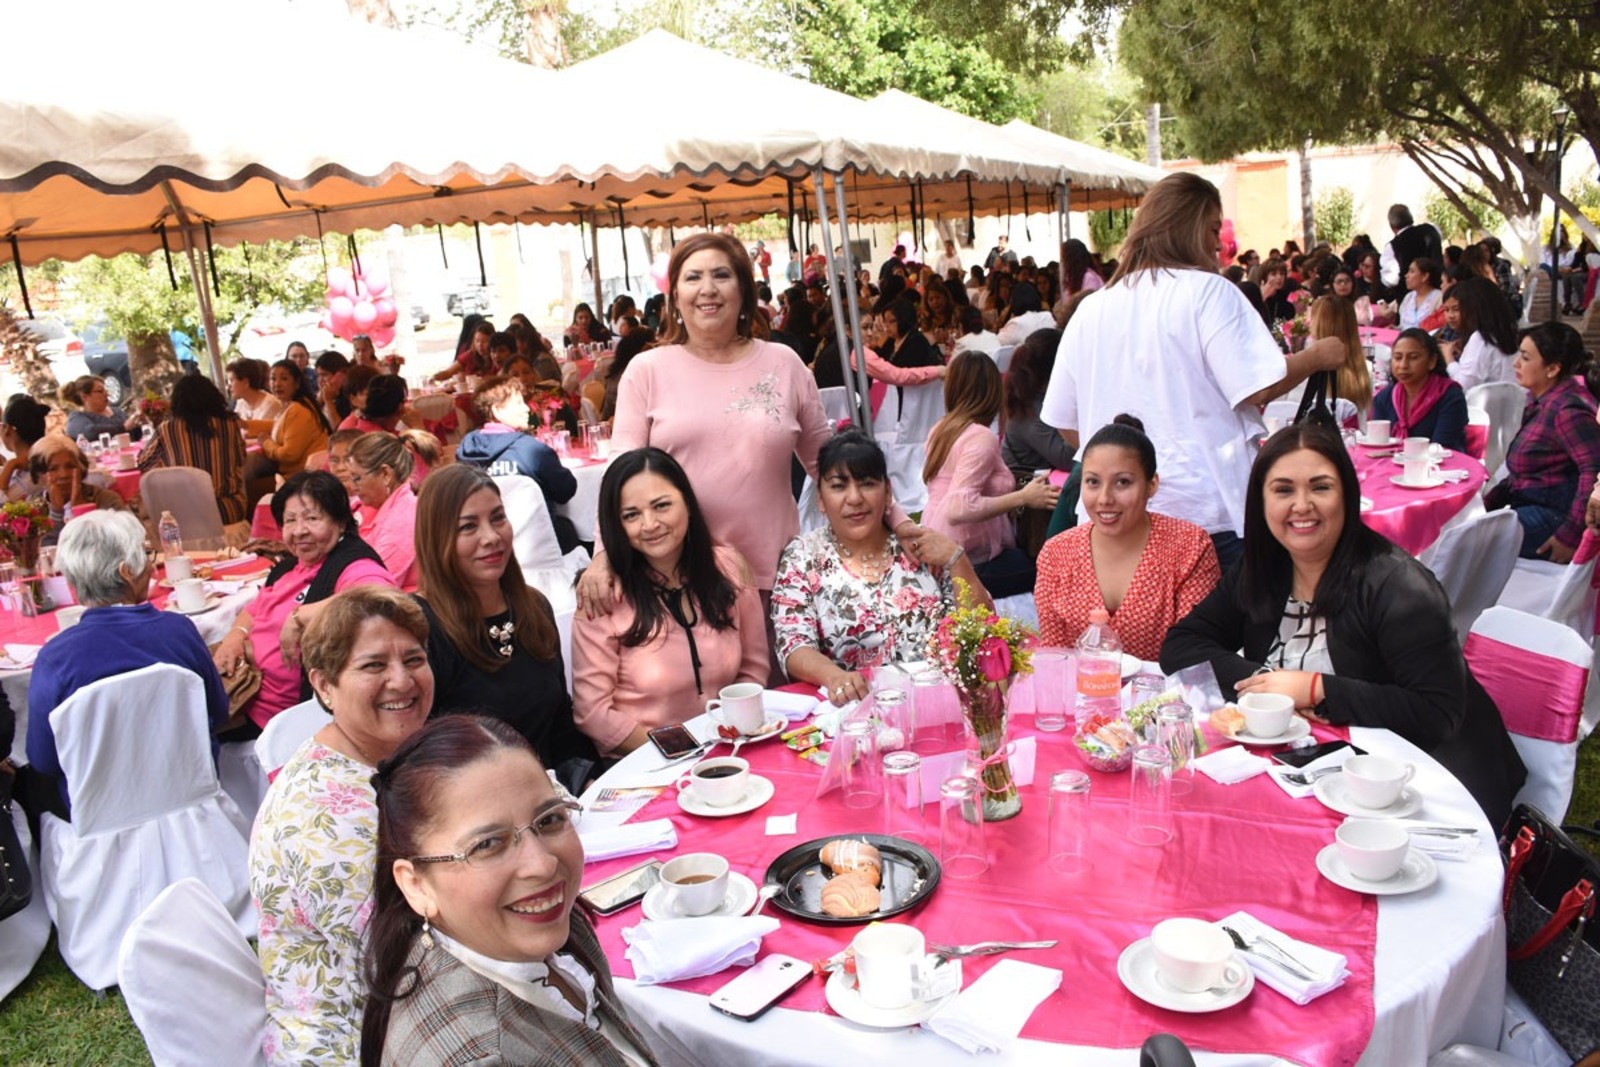 La alcaldesa de Lerdo, María Luisa González Achem, encabezó la conmemoración del Día Internacional de la Mujer.